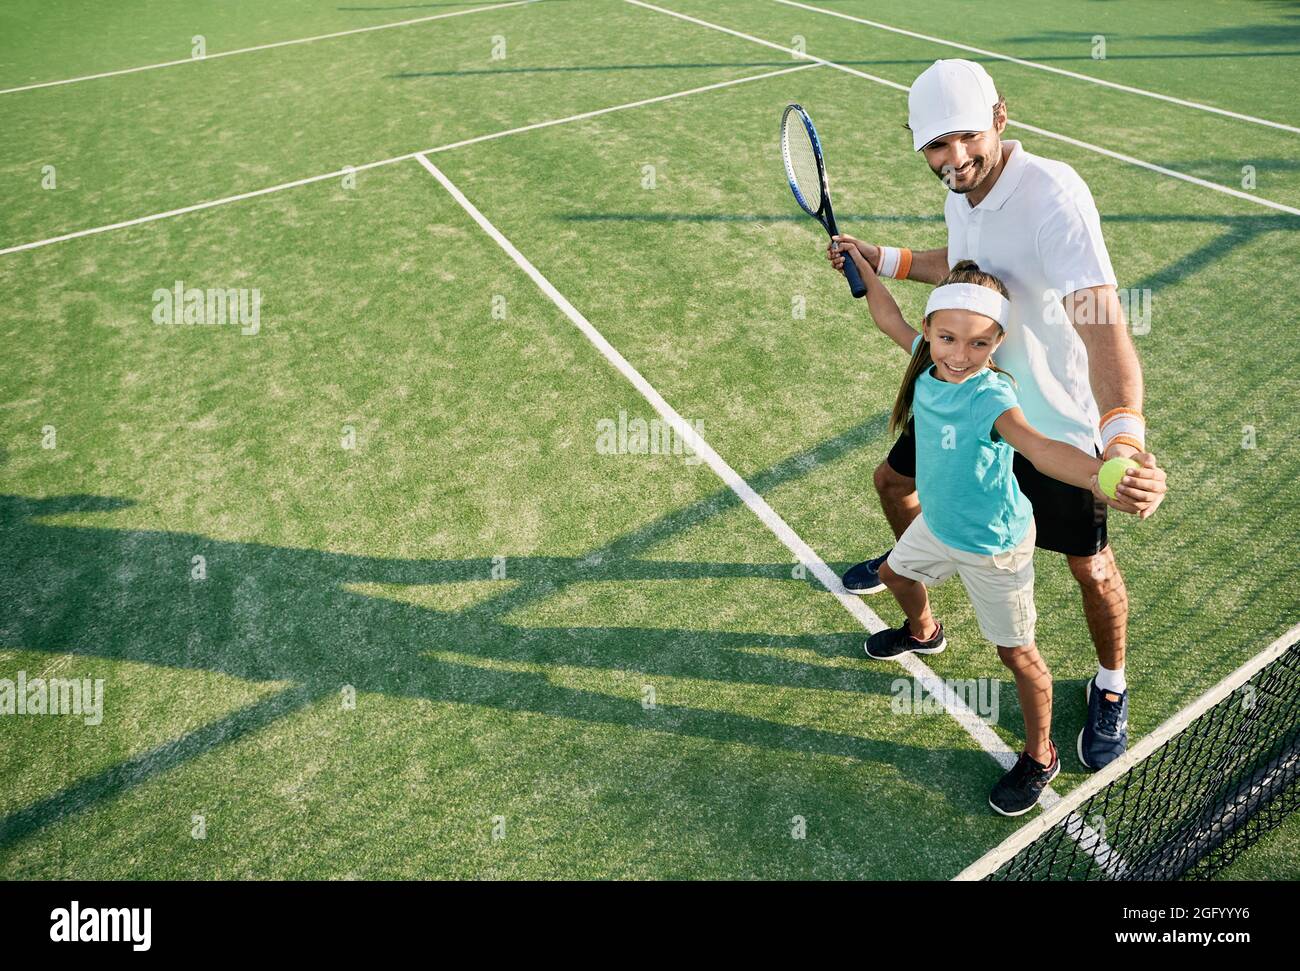 Une petite fille positive tout en apprenant à jouer au tennis avec un entraîneur masculin sur un terrain d'herbe en plein air. Instructeur individuel pour un enfant pour un entraînement de tennis Banque D'Images